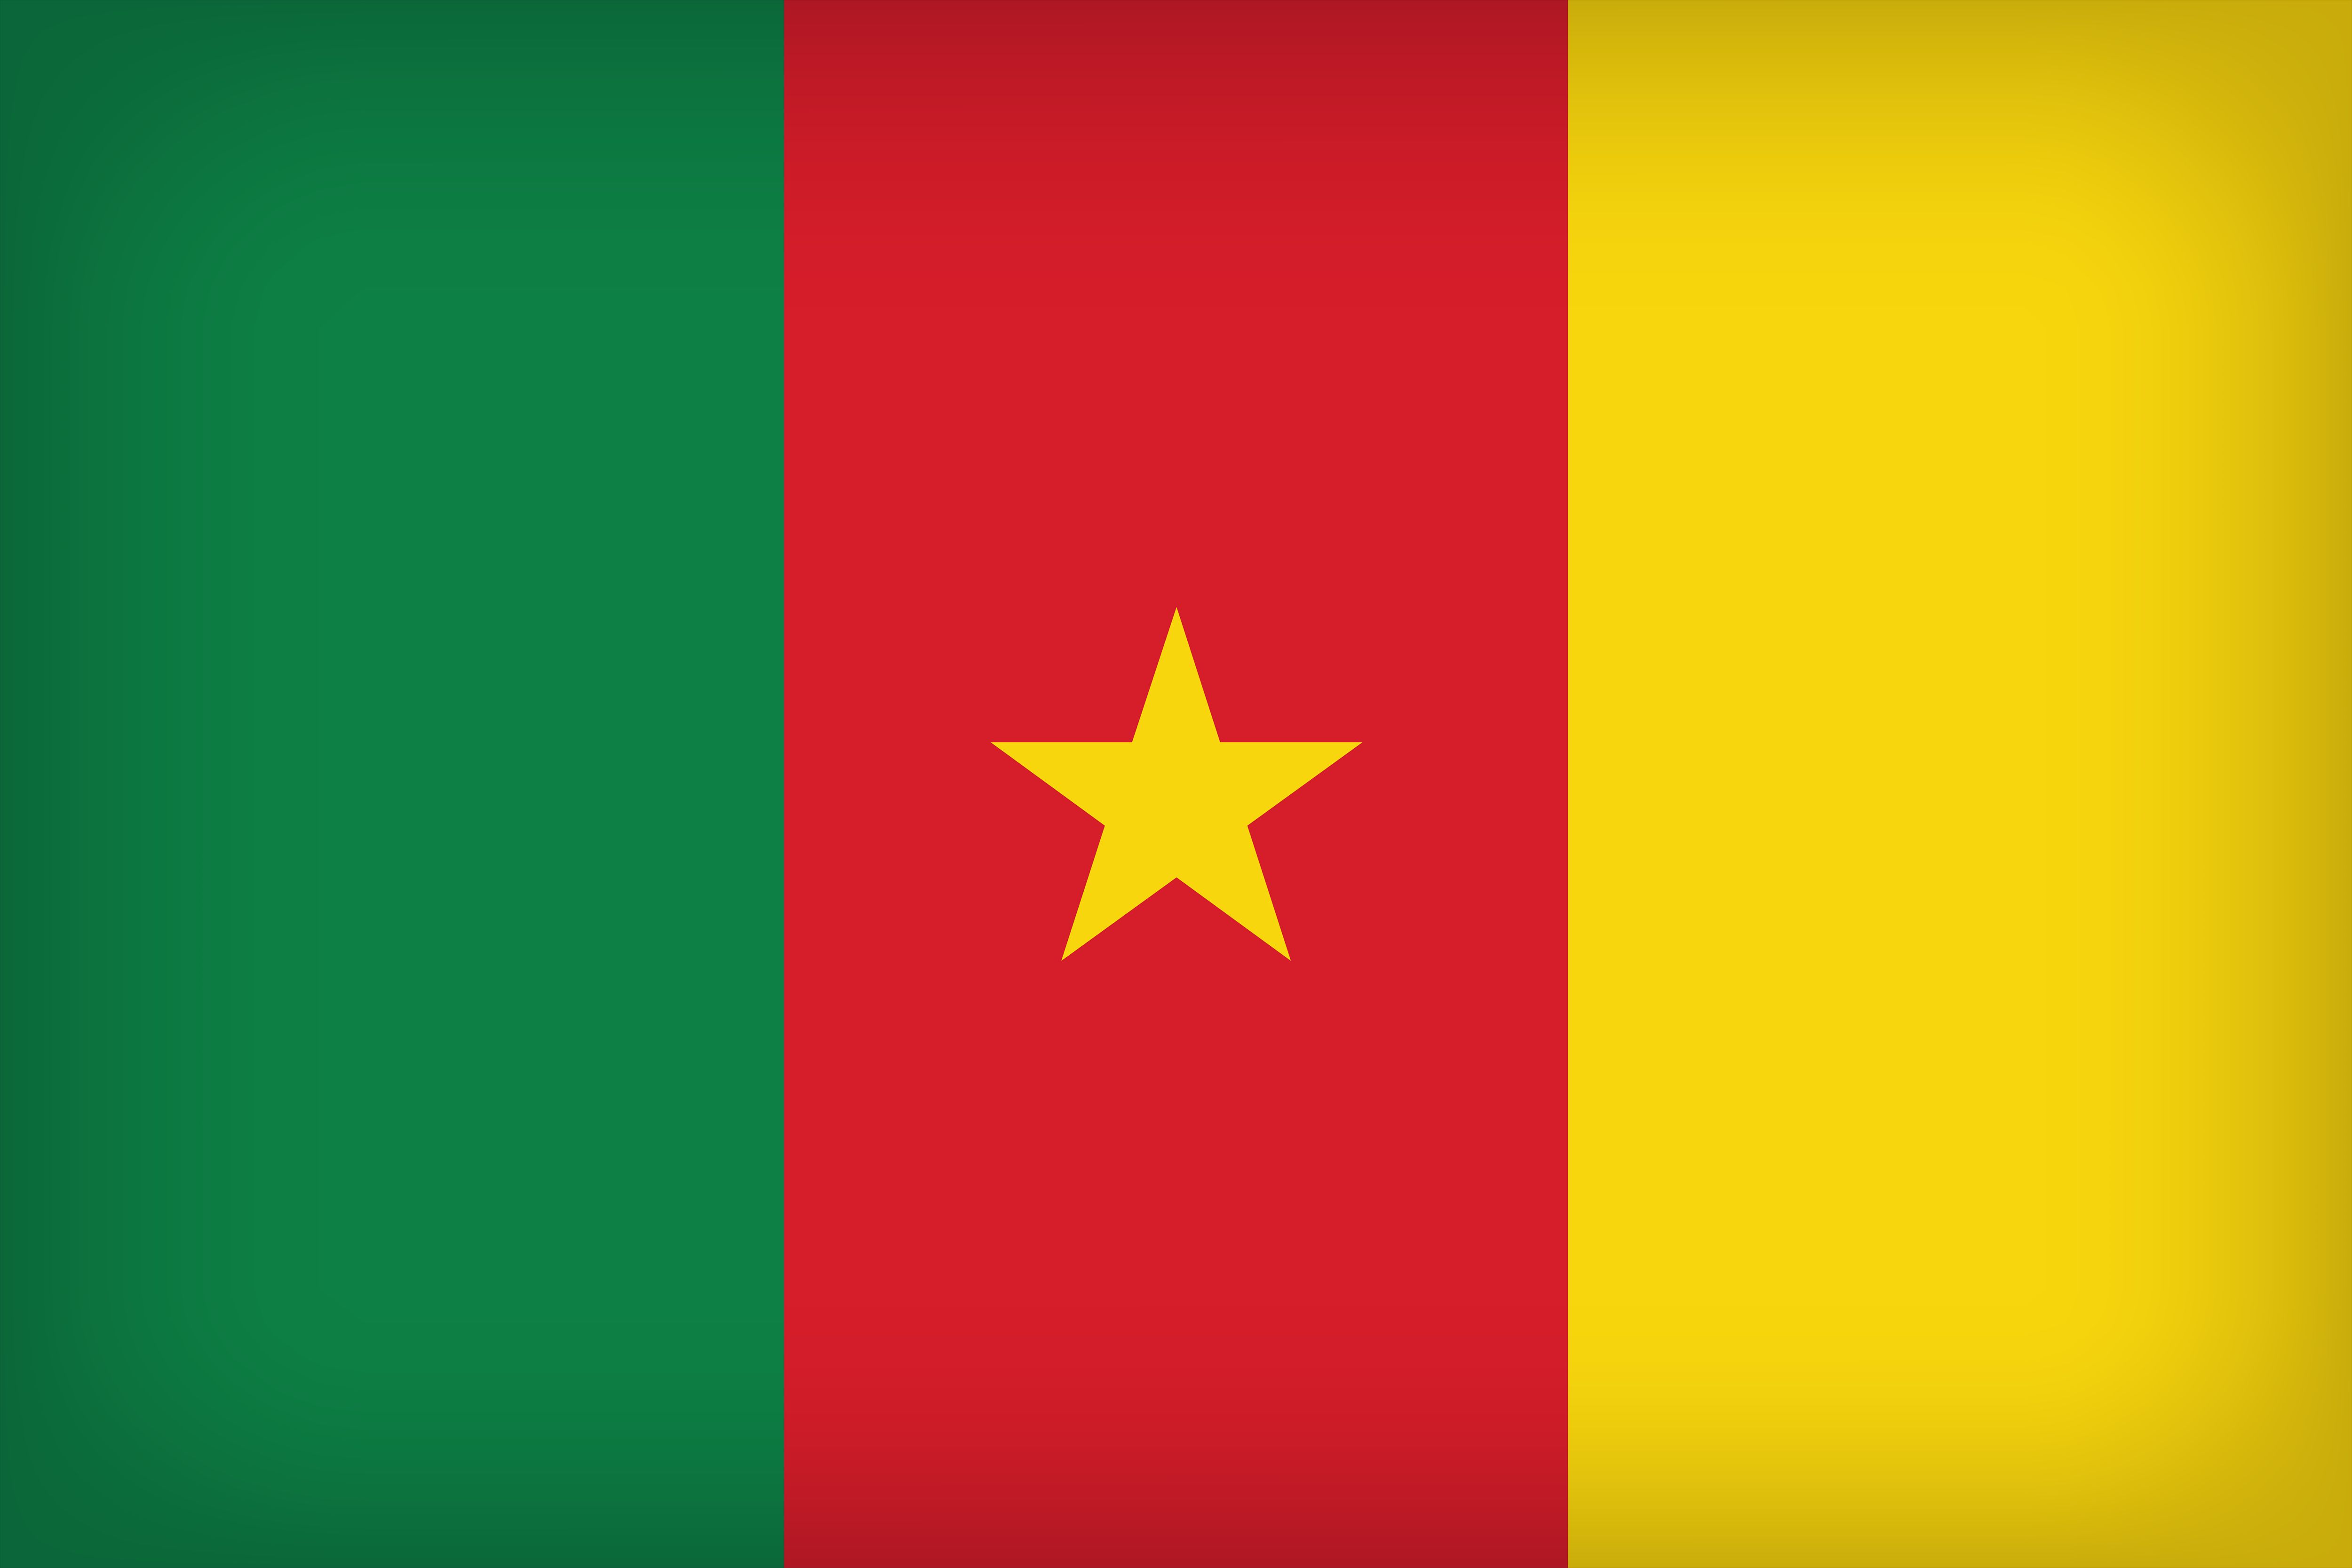 Скачать обои Флаг Камеруна на телефон бесплатно